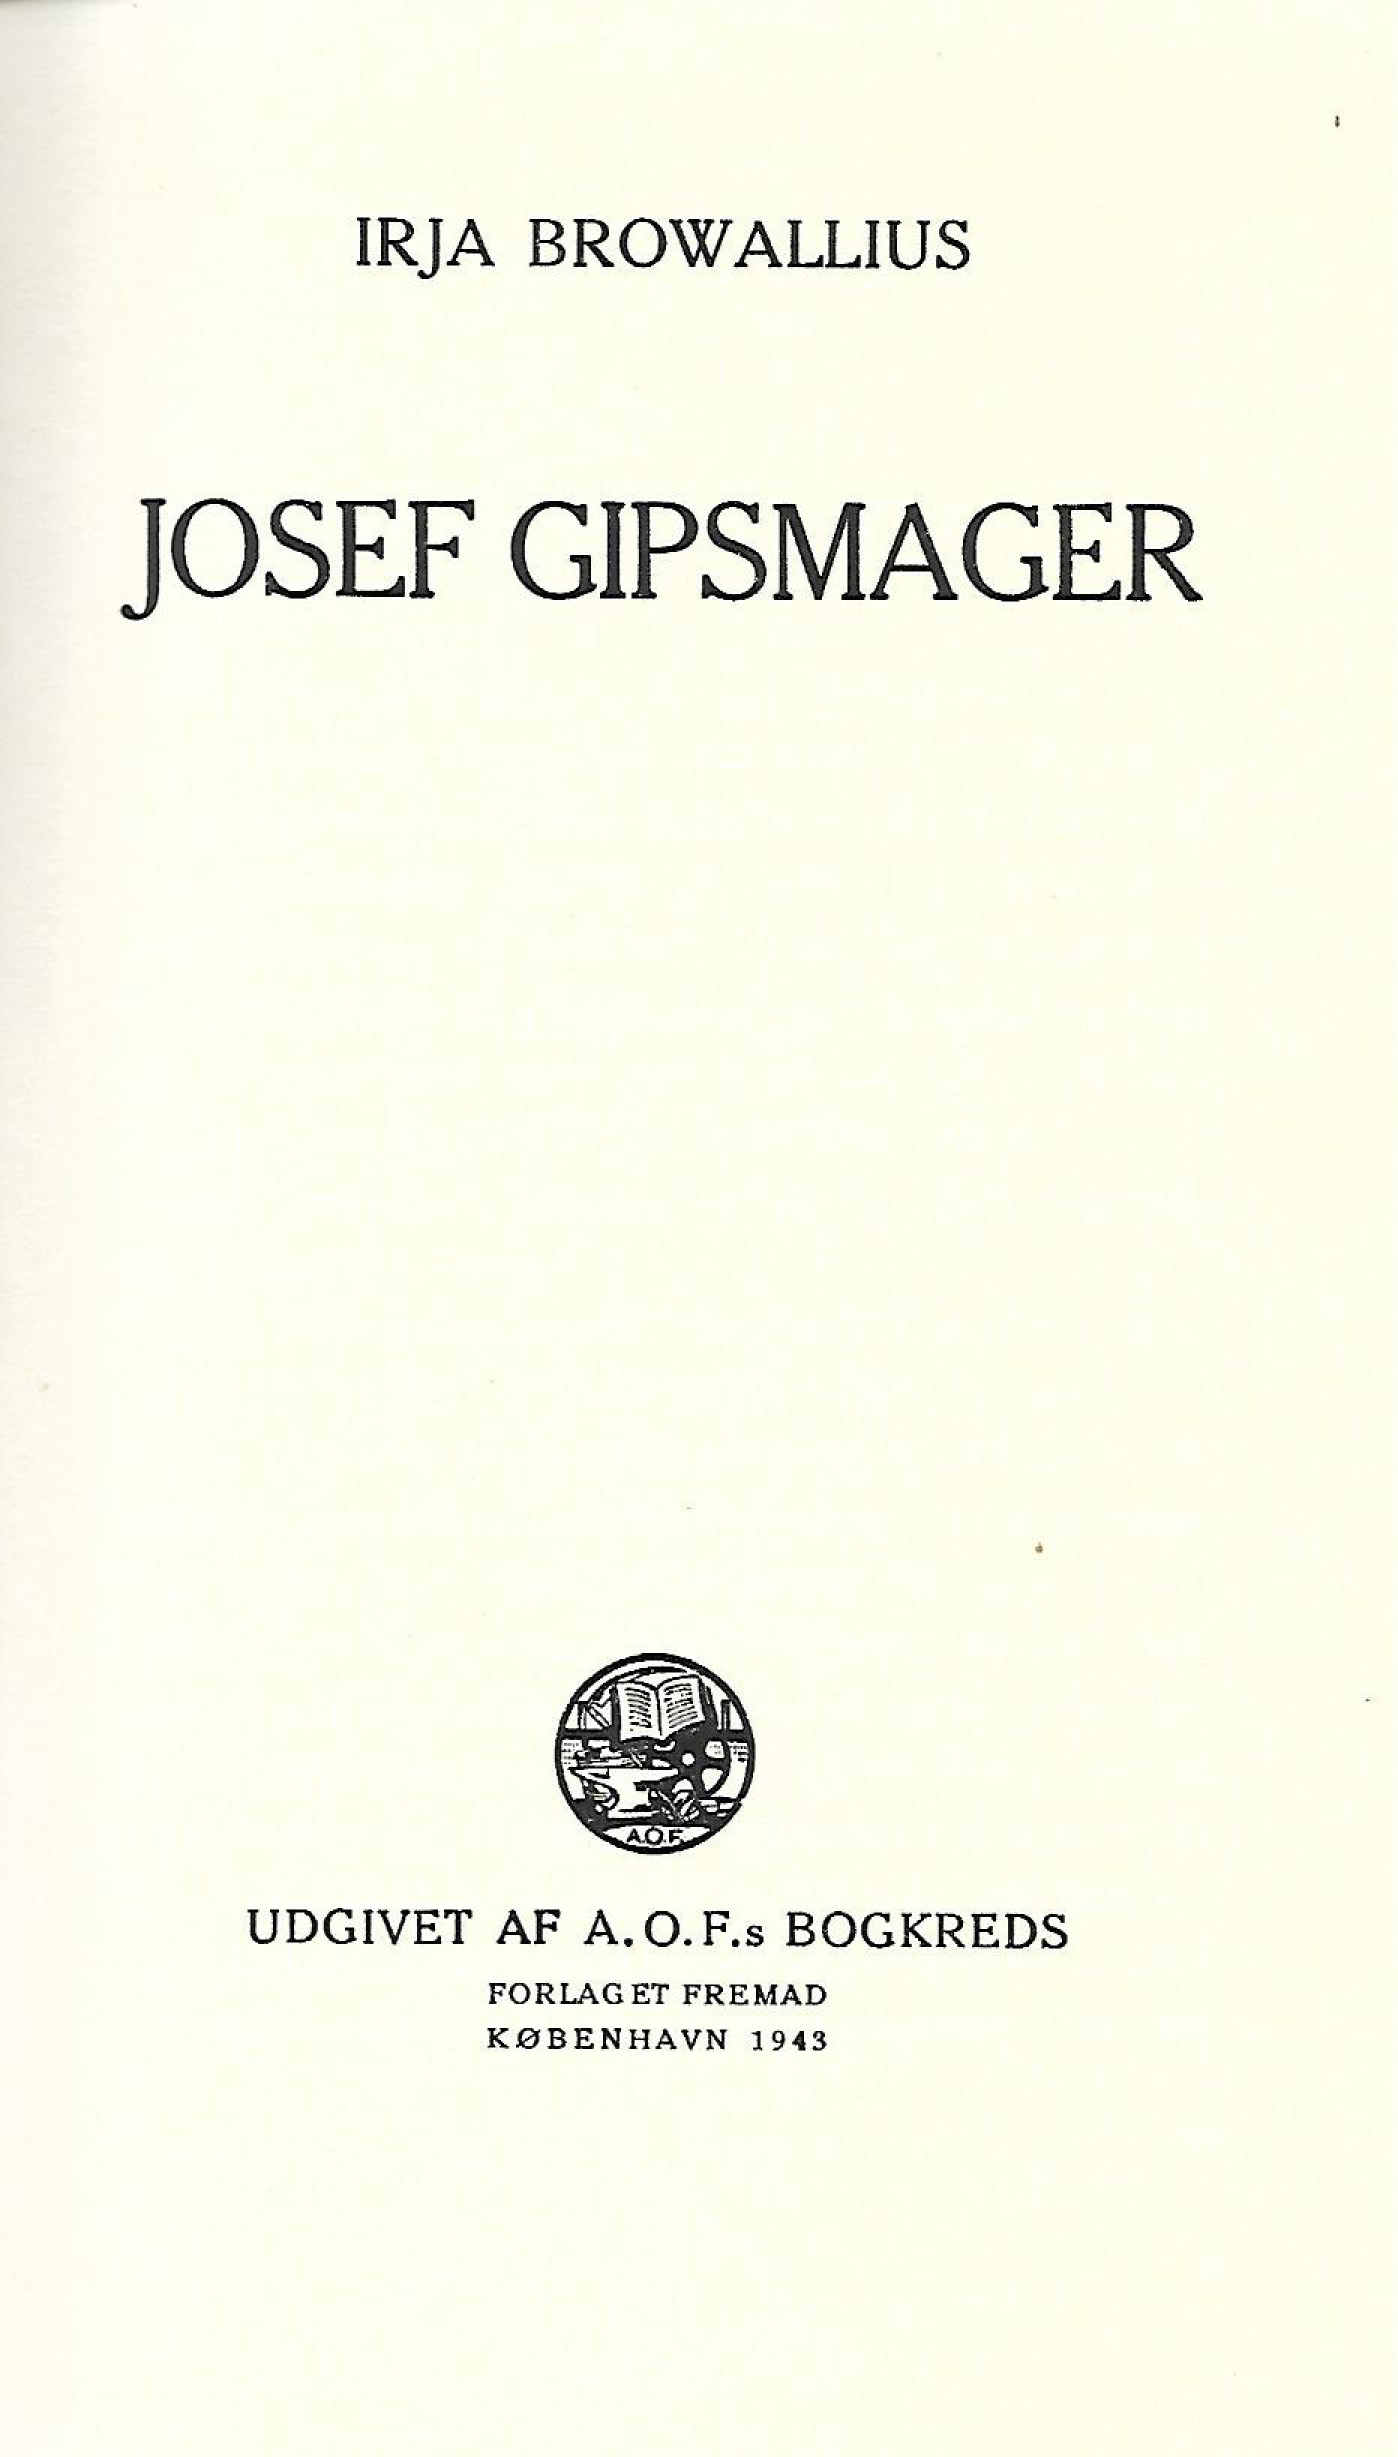 Josef Gipsmager - Irja Browallius - 1943-1